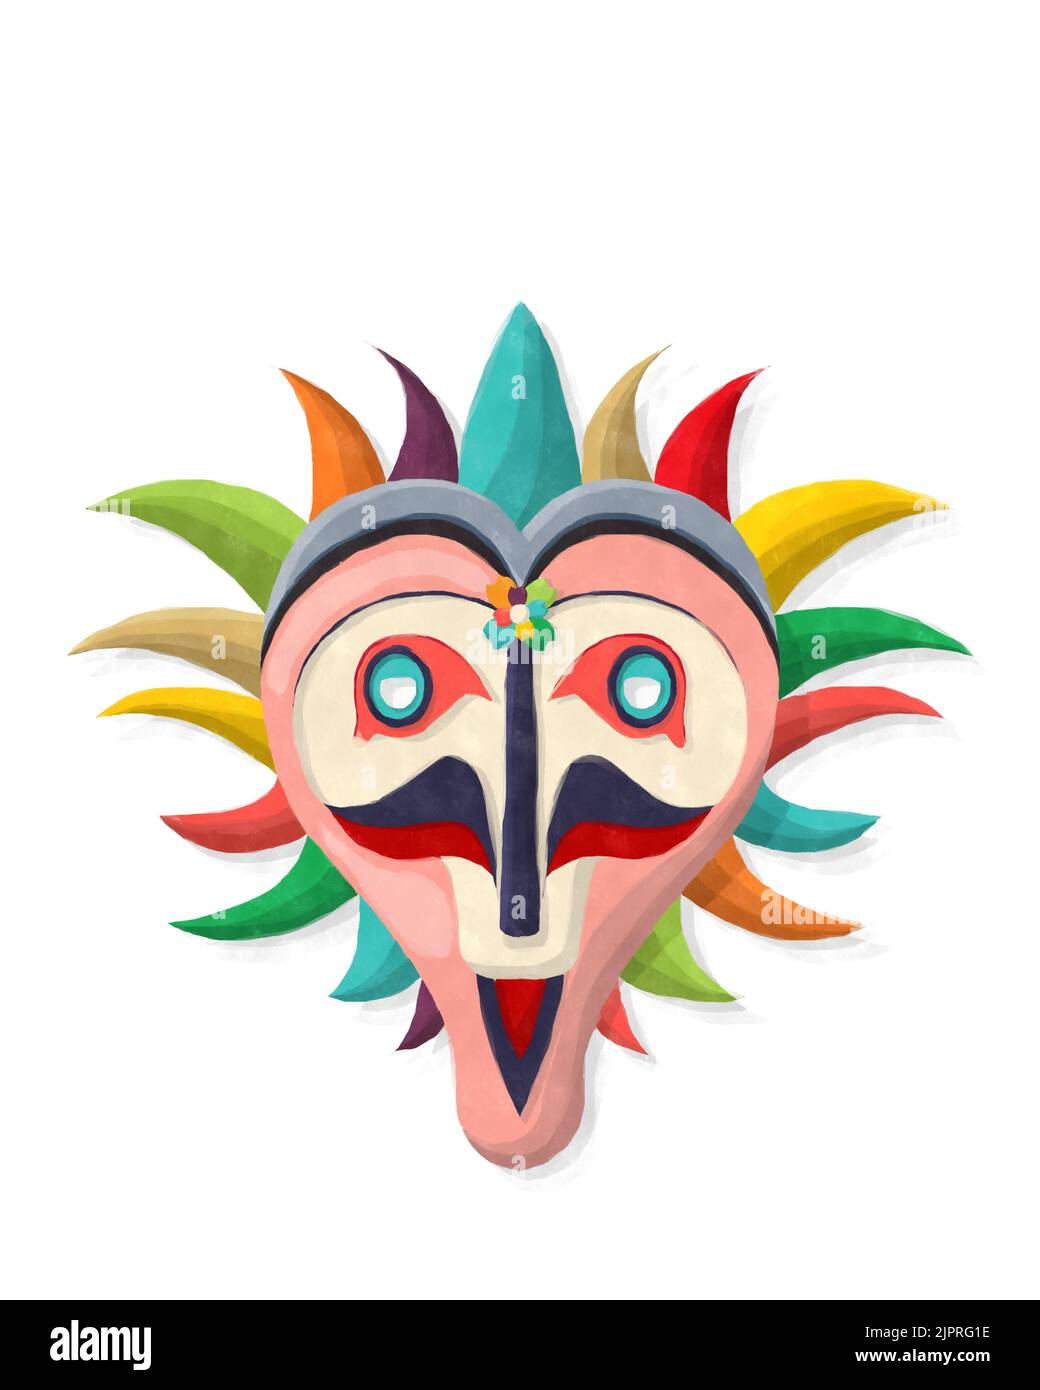 Style aquarelle dessin d'un masque de carnaval sur fond blanc Banque D'Images